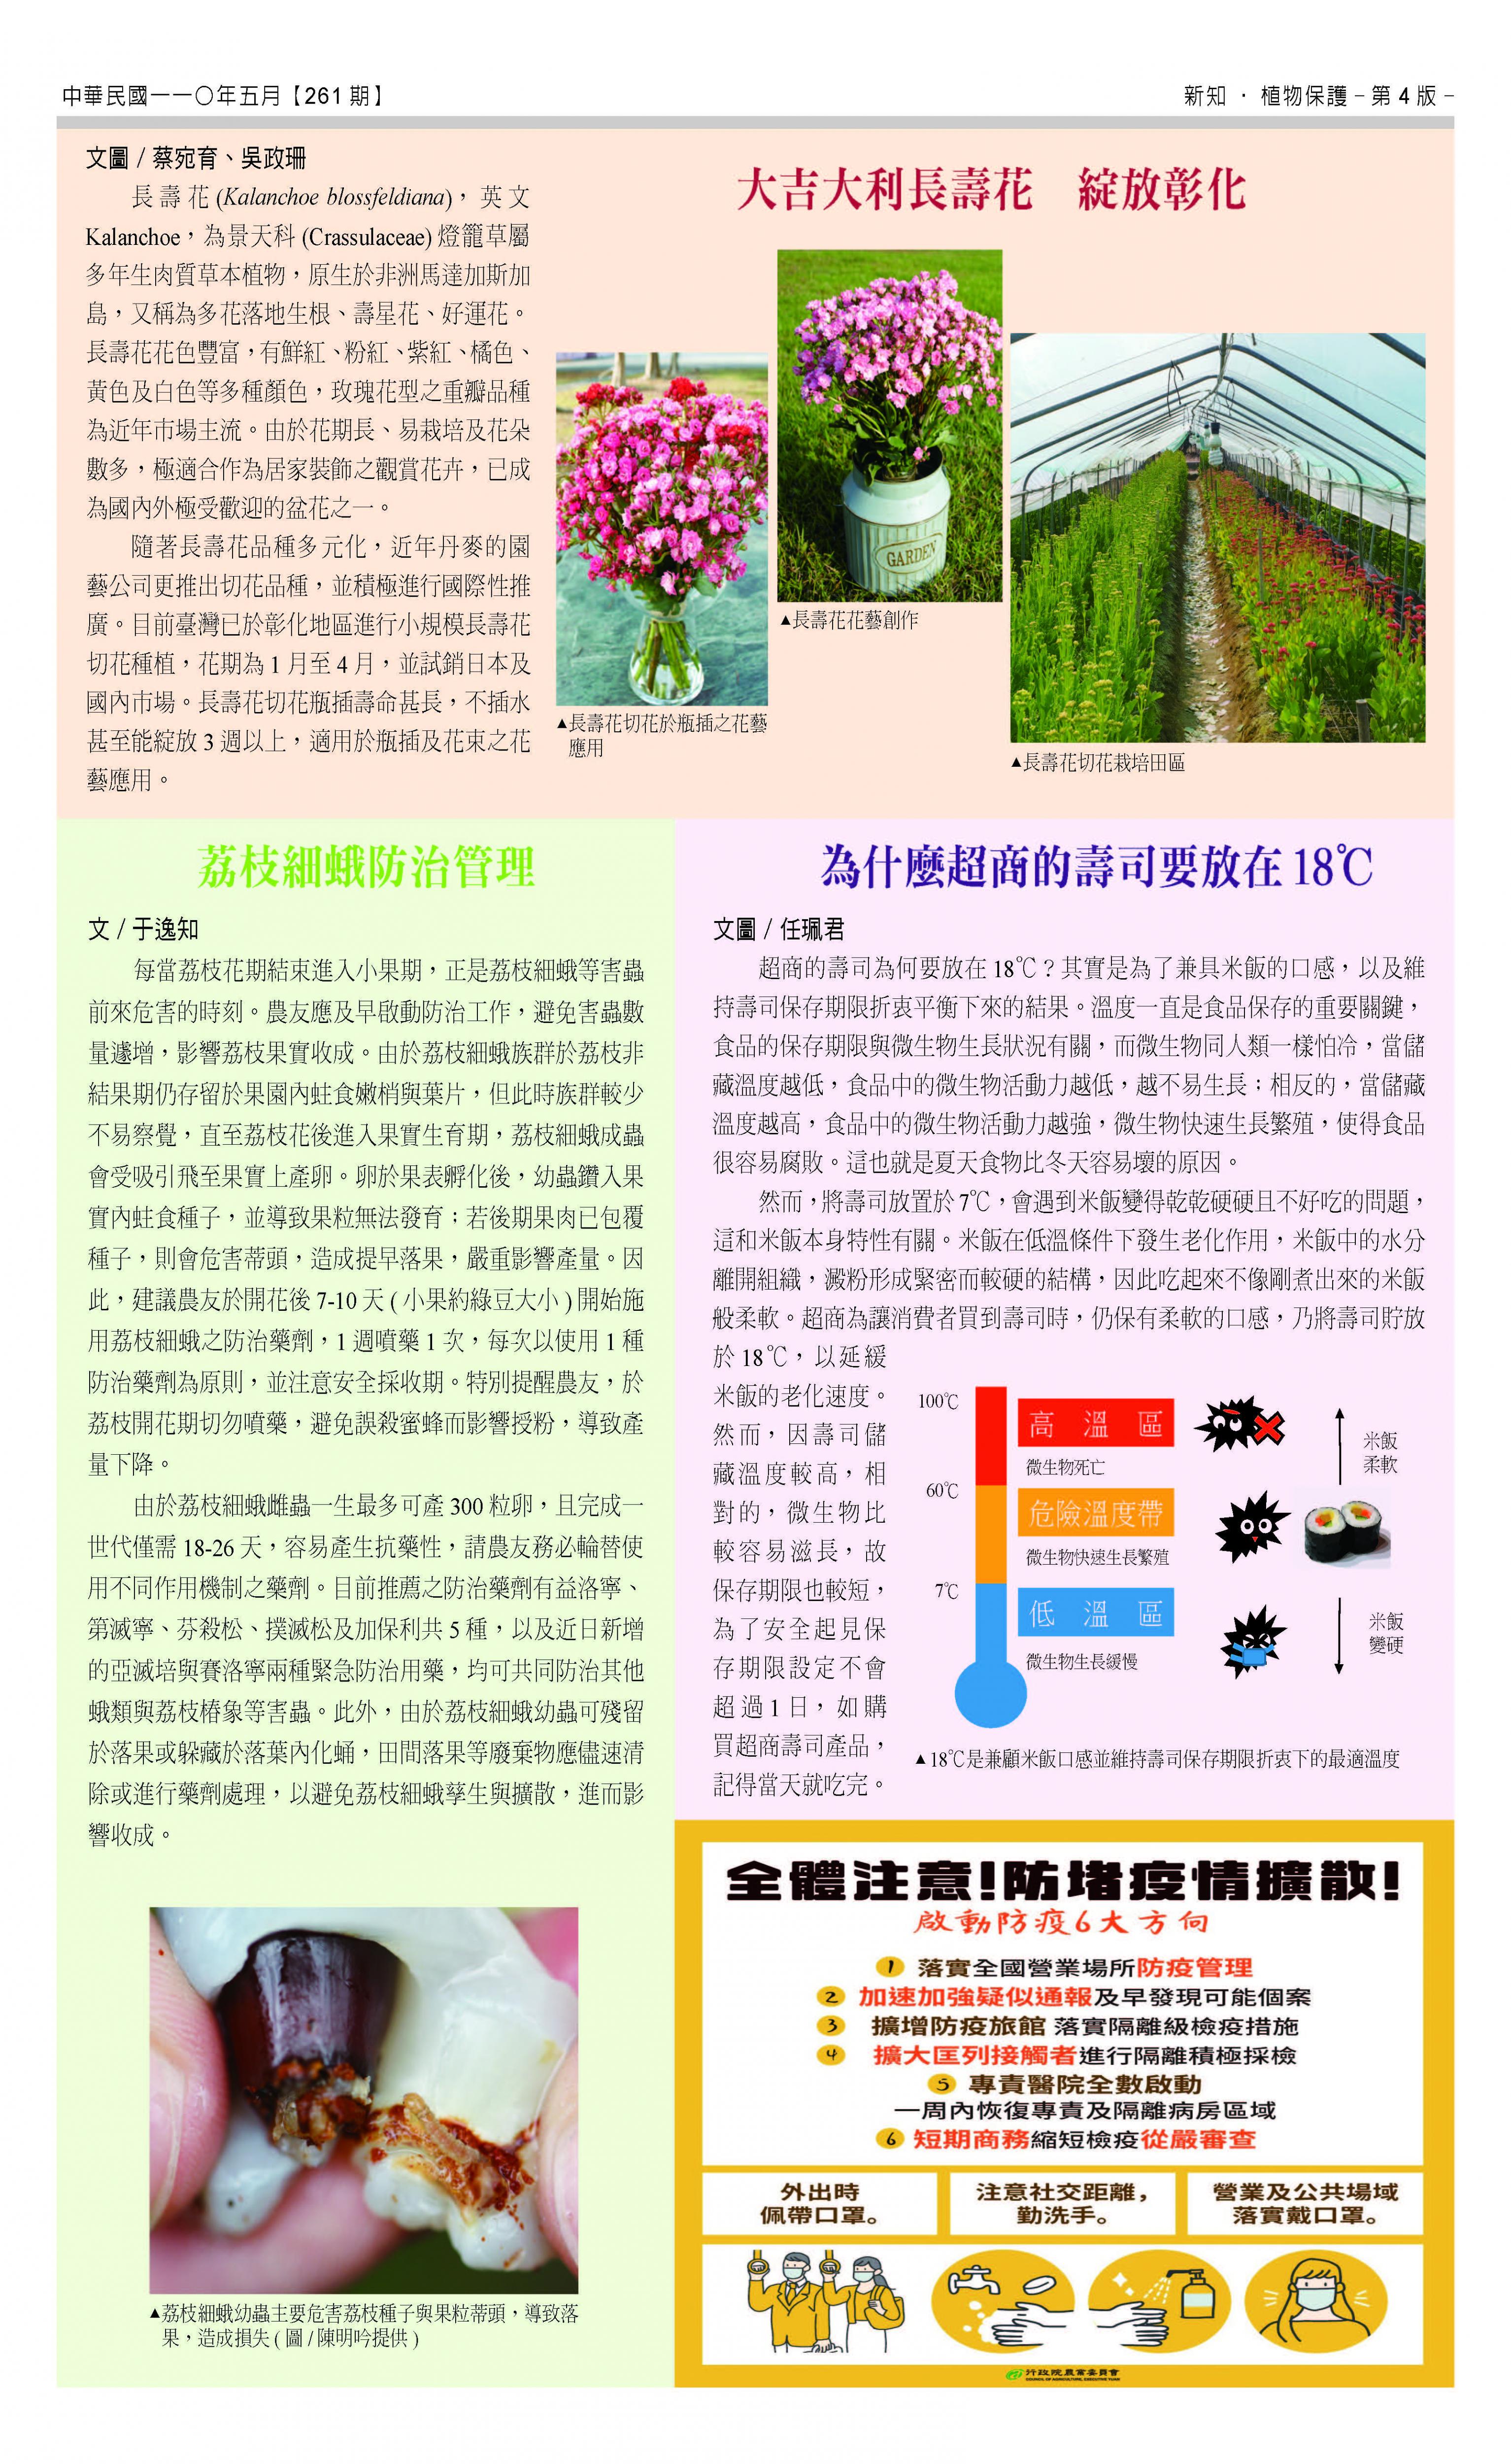 臺中區農情月刊第261期第四頁